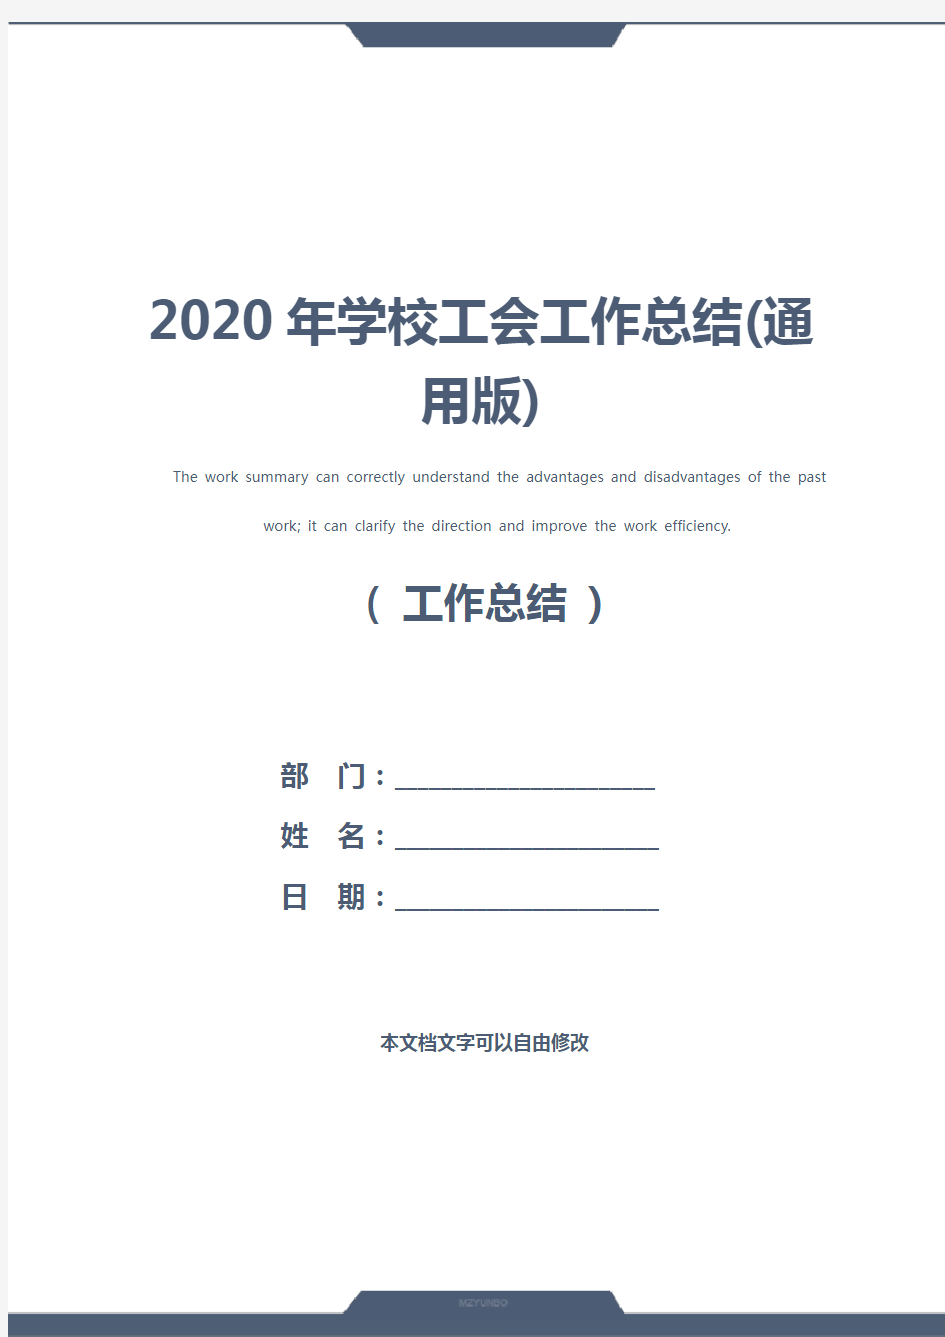 2020年学校工会工作总结(通用版)